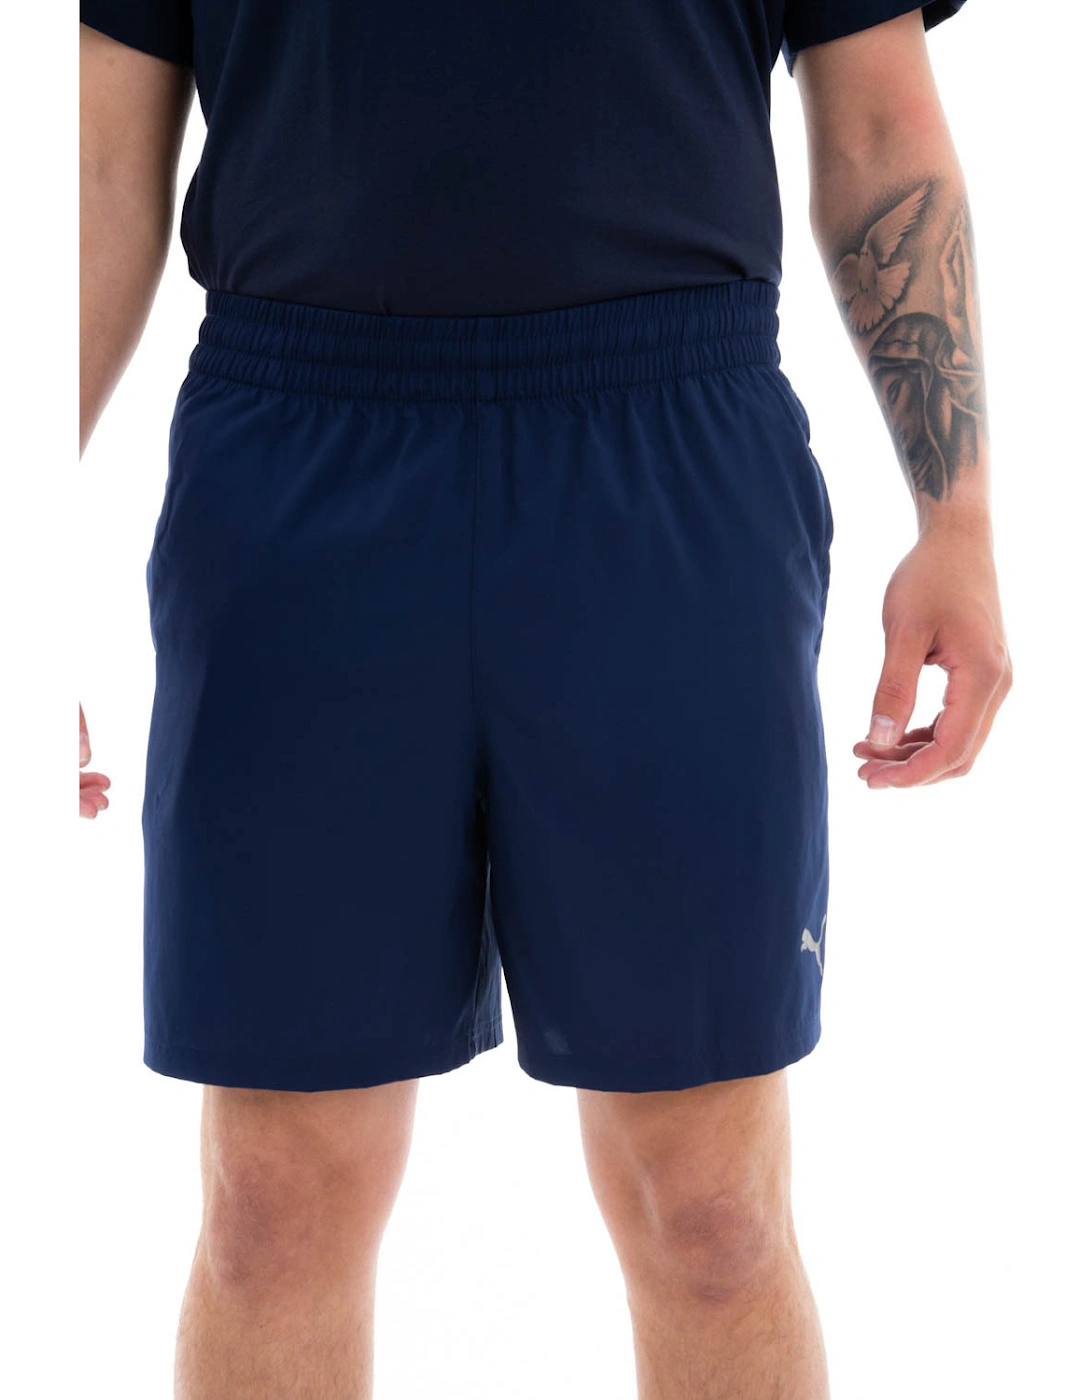 Mens Training Blaster Shorts (Navy), 3 of 2